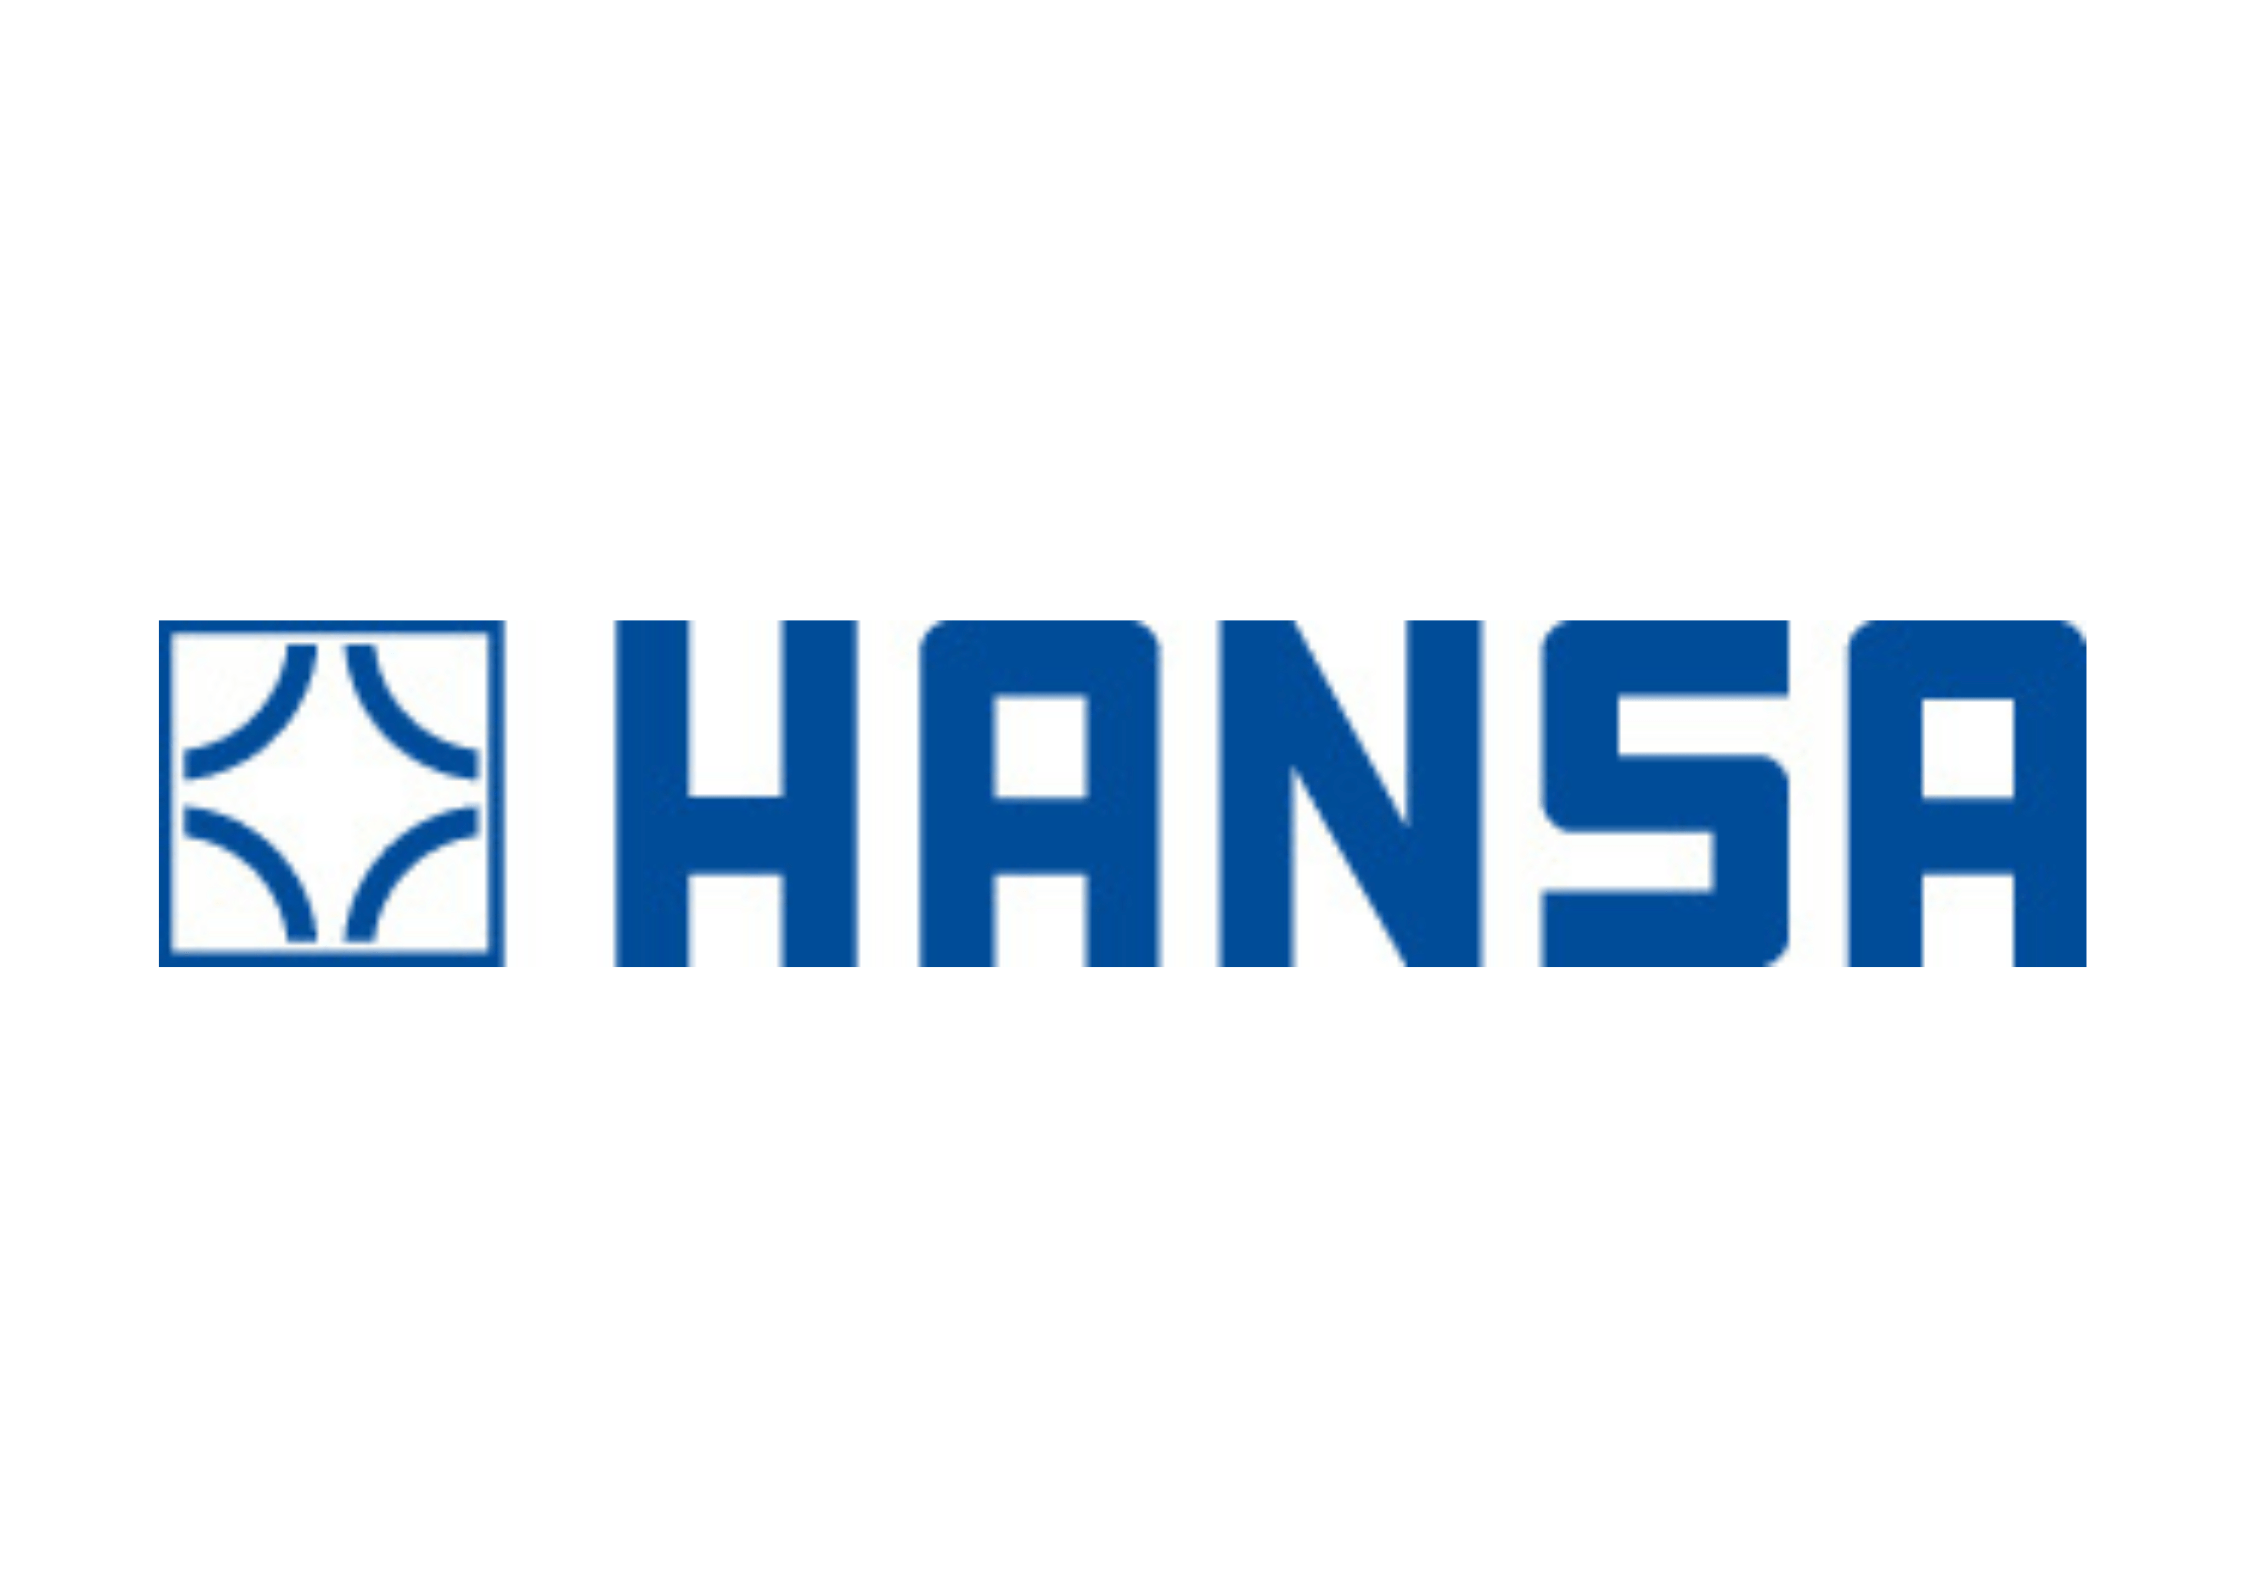 Logo HANSA